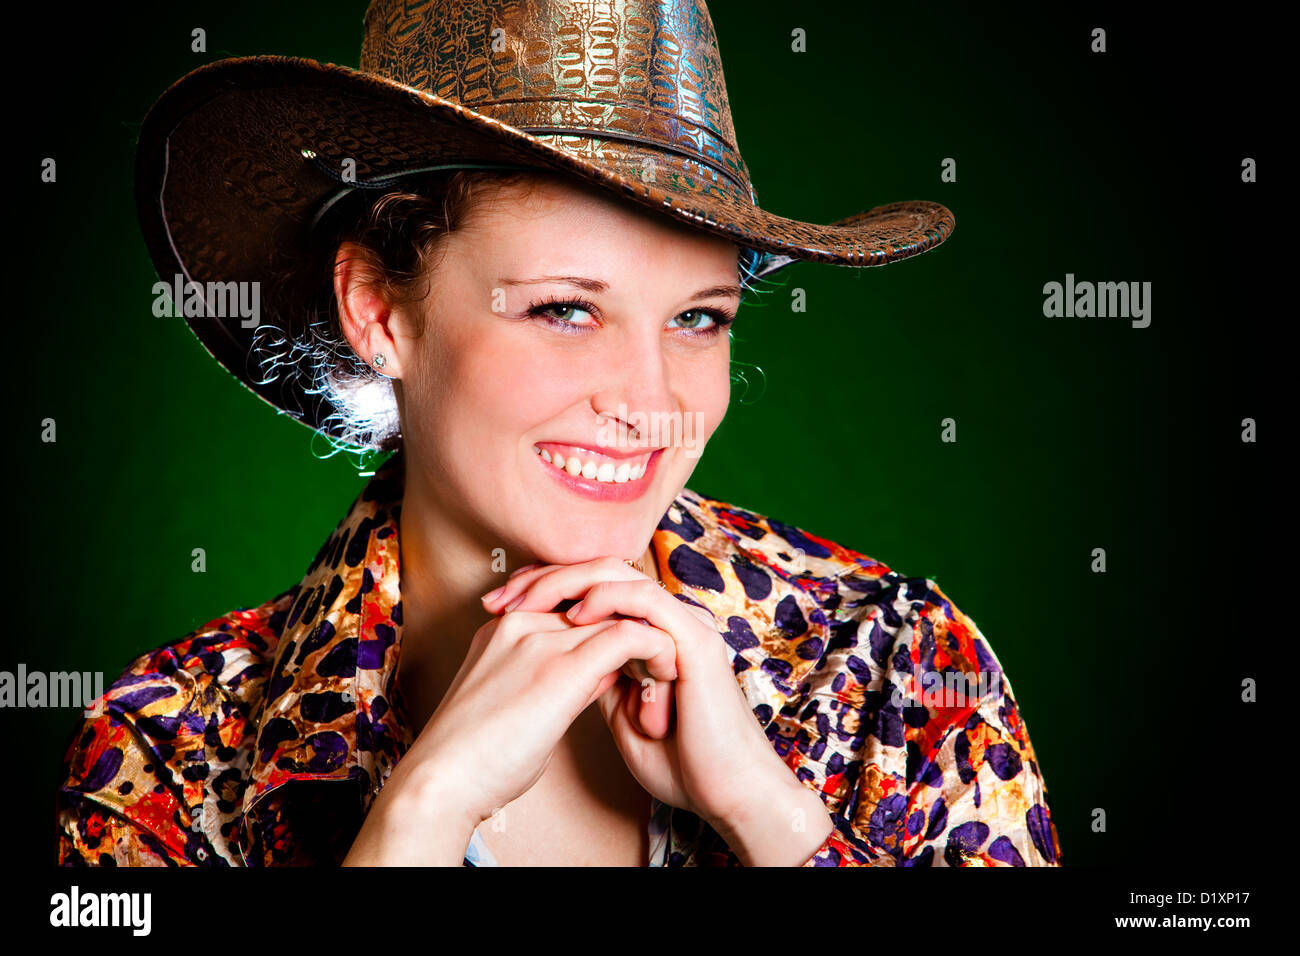 Mädchen in einen Cowboy-Hut auf grünem Hintergrund Stockfoto